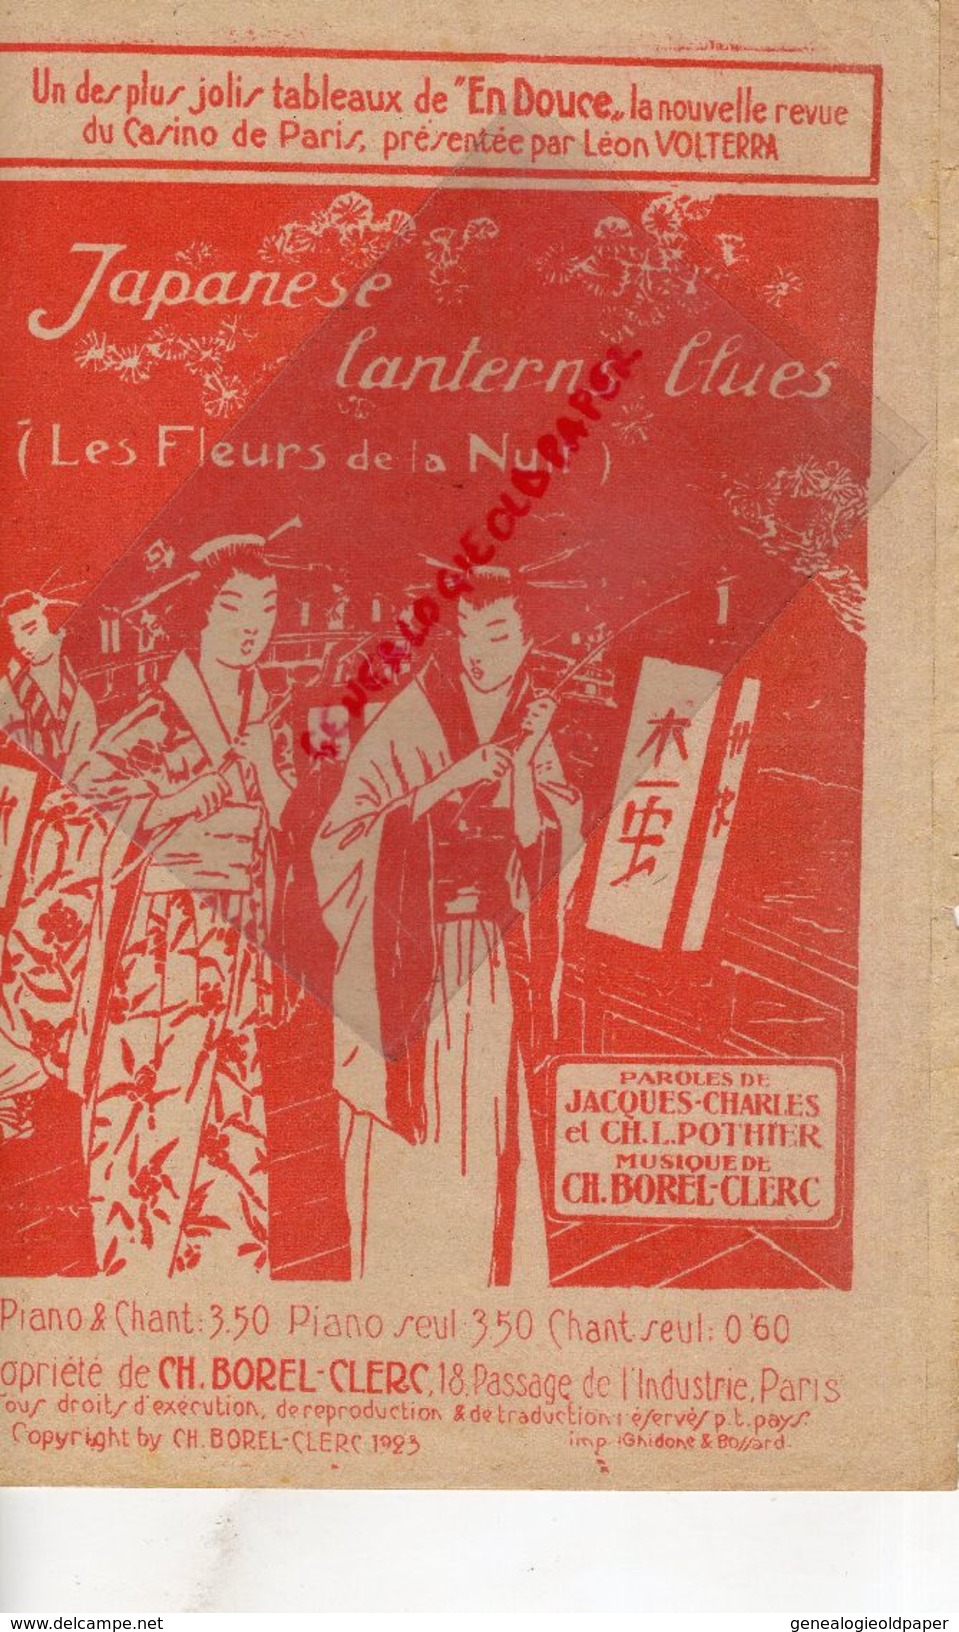 75-CASINO DE PARIS-LEON VOLTERRA-JAPANESE LANTERNES BLUES-FLEURS DE LA NUIT-JAPON-JACQUES CHARLES-POTHIER-CH. BOREL 1923 - Partituras